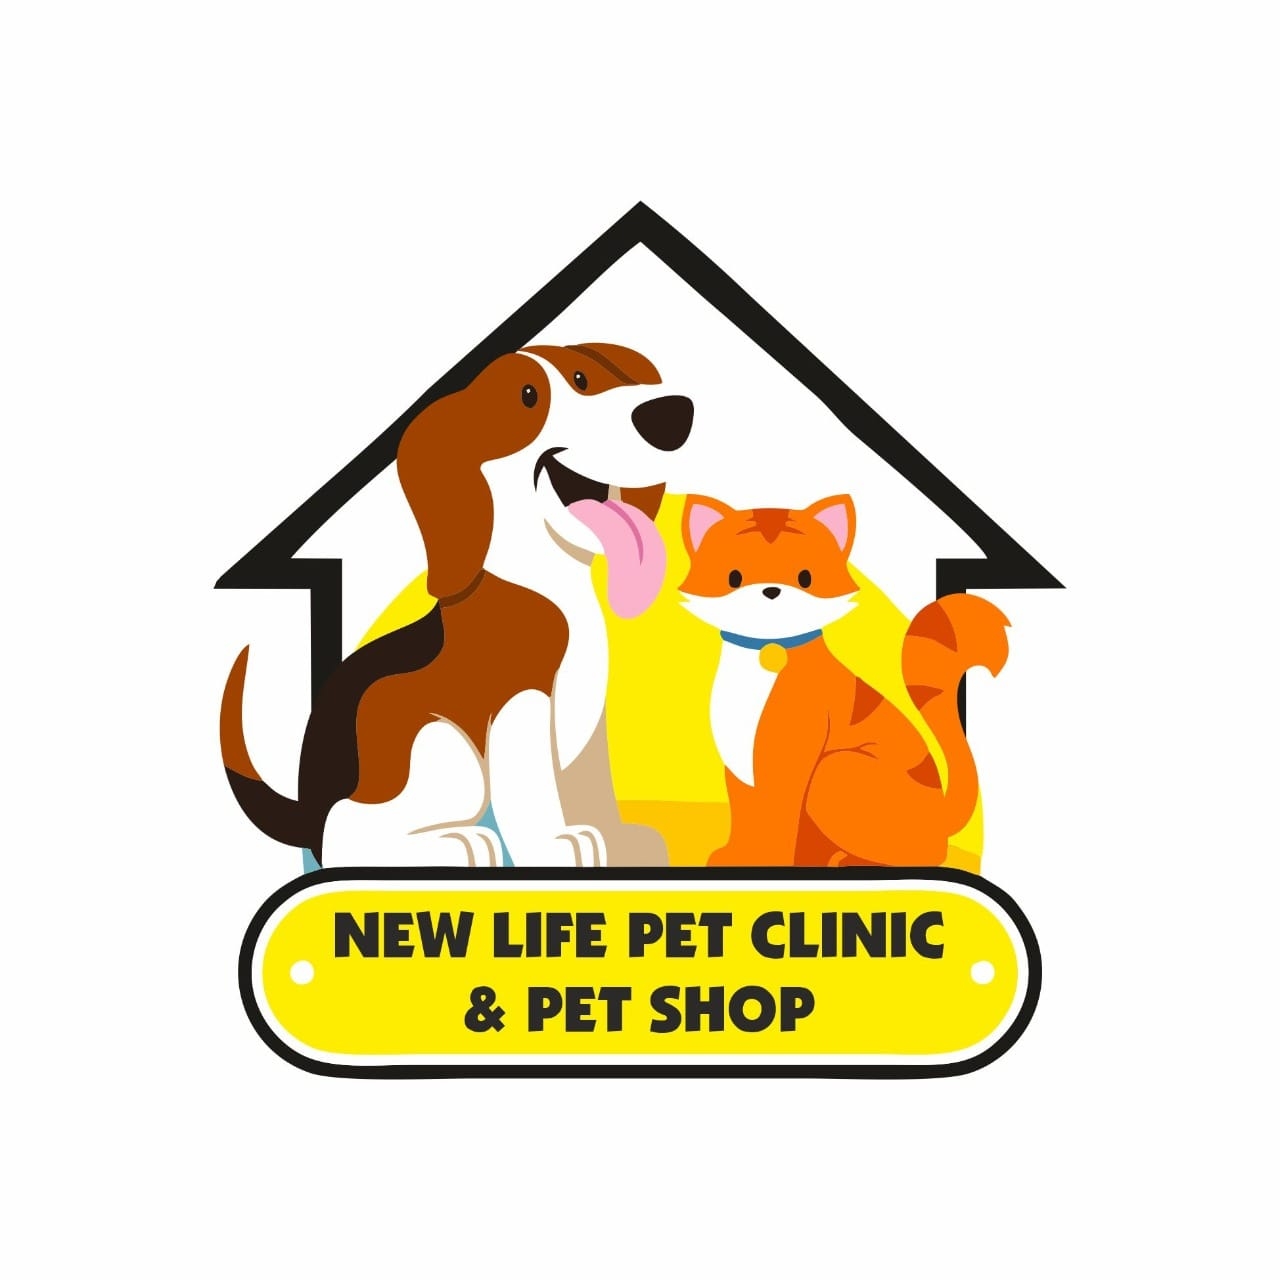 New life pet clinic & pet shop|Dentists|Medical Services